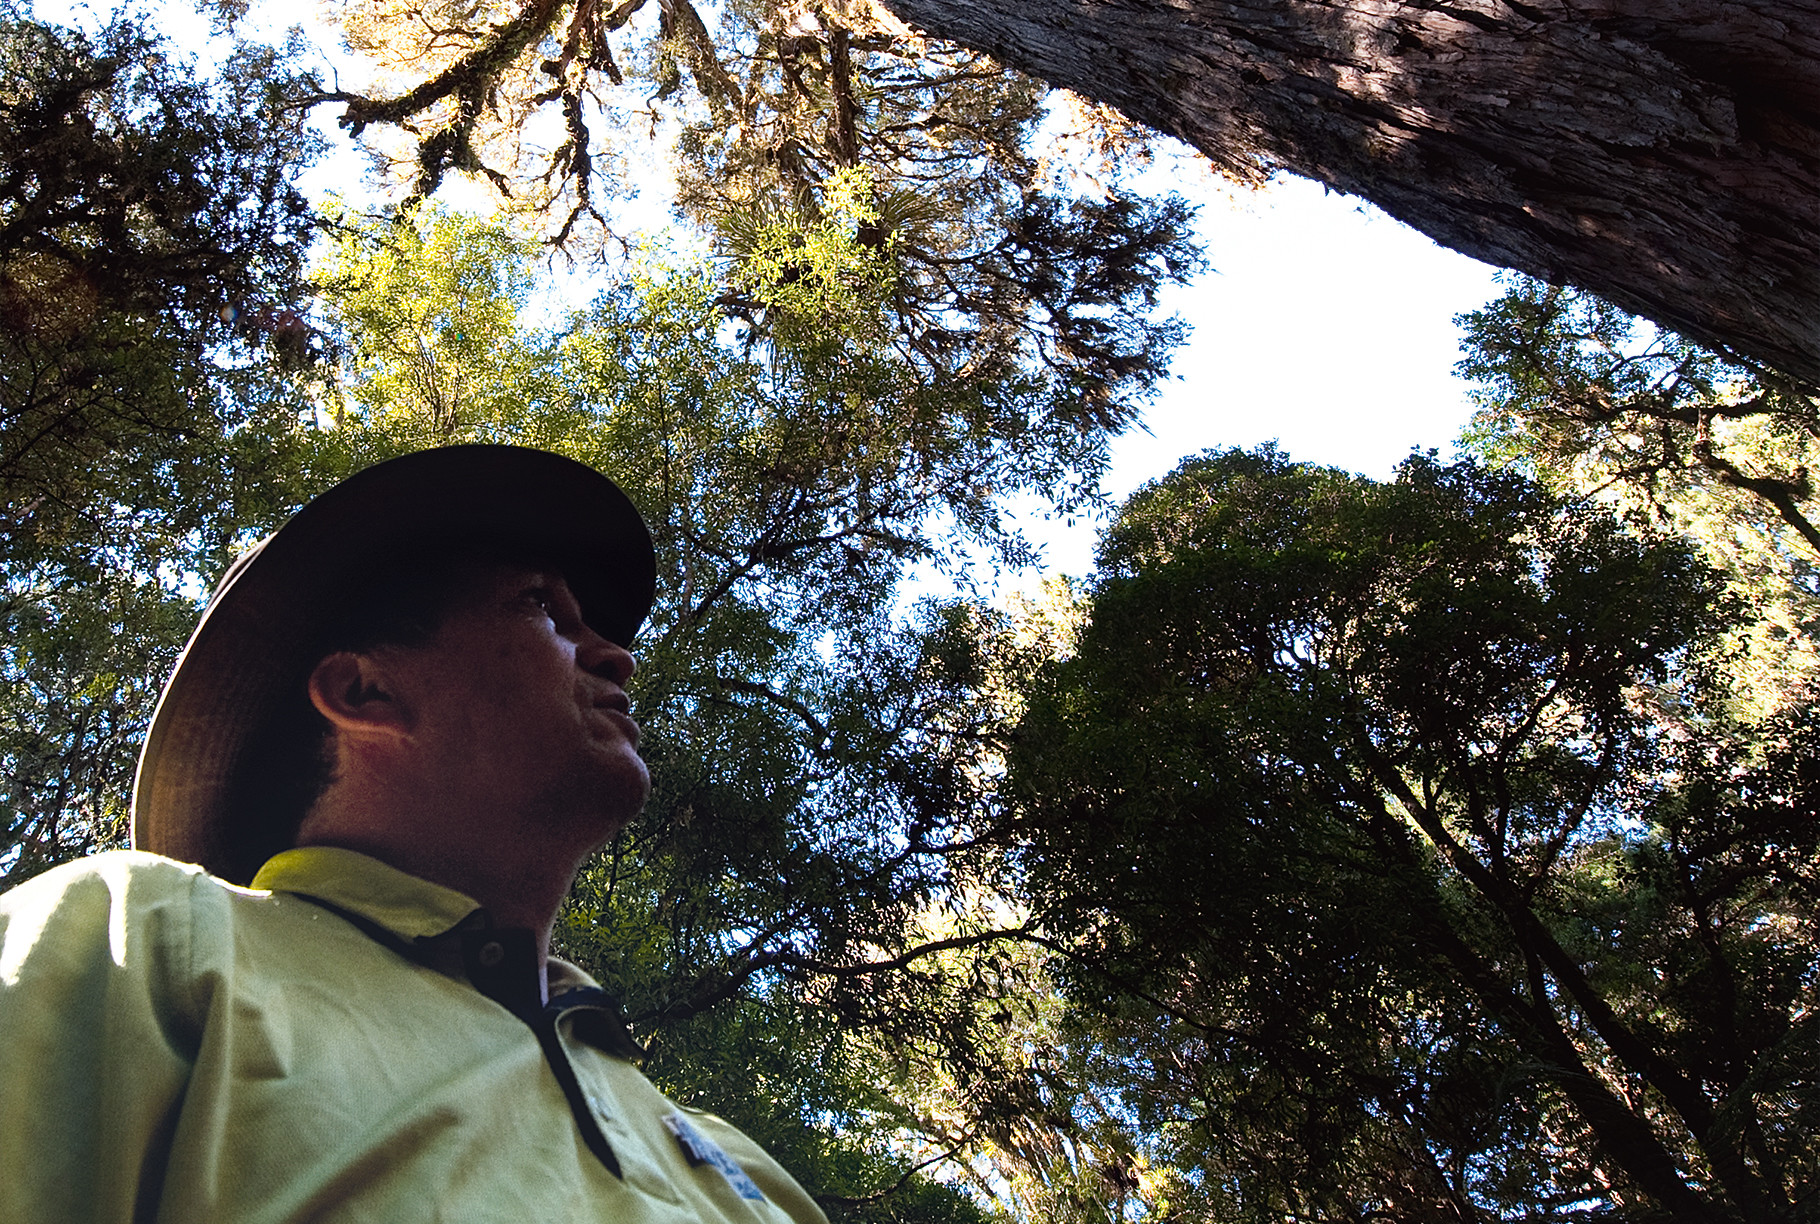 Waipoua, een betoverend bos met millennia oude kauribomen, is een van de hoogtepunten van Nieuw-Zeeland. Foto: Eveline Voss